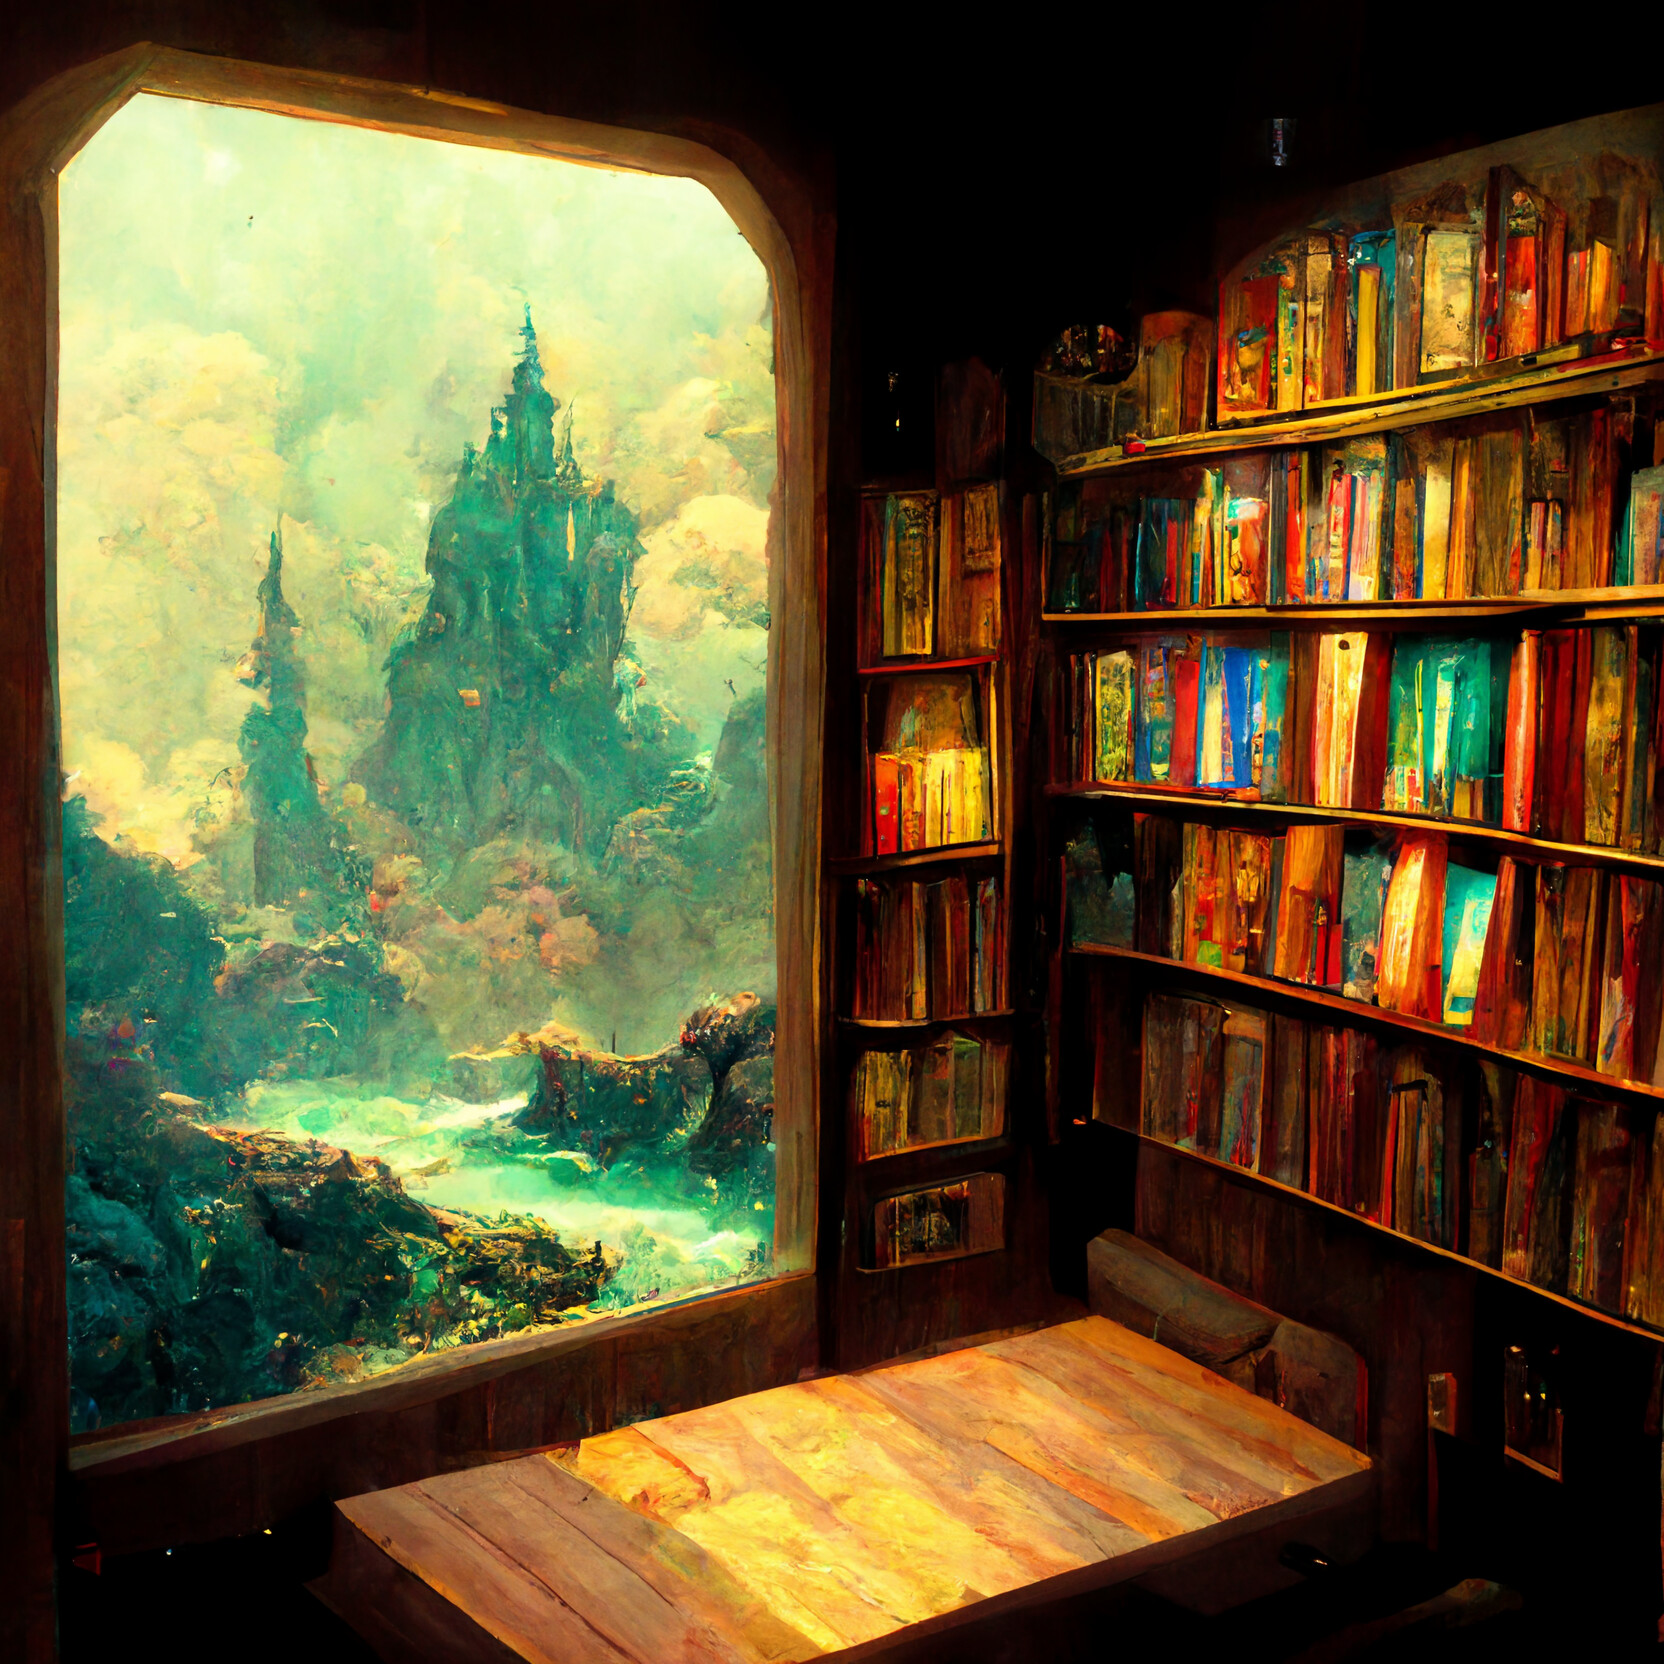 ArtStation - Book nook window to fantasy